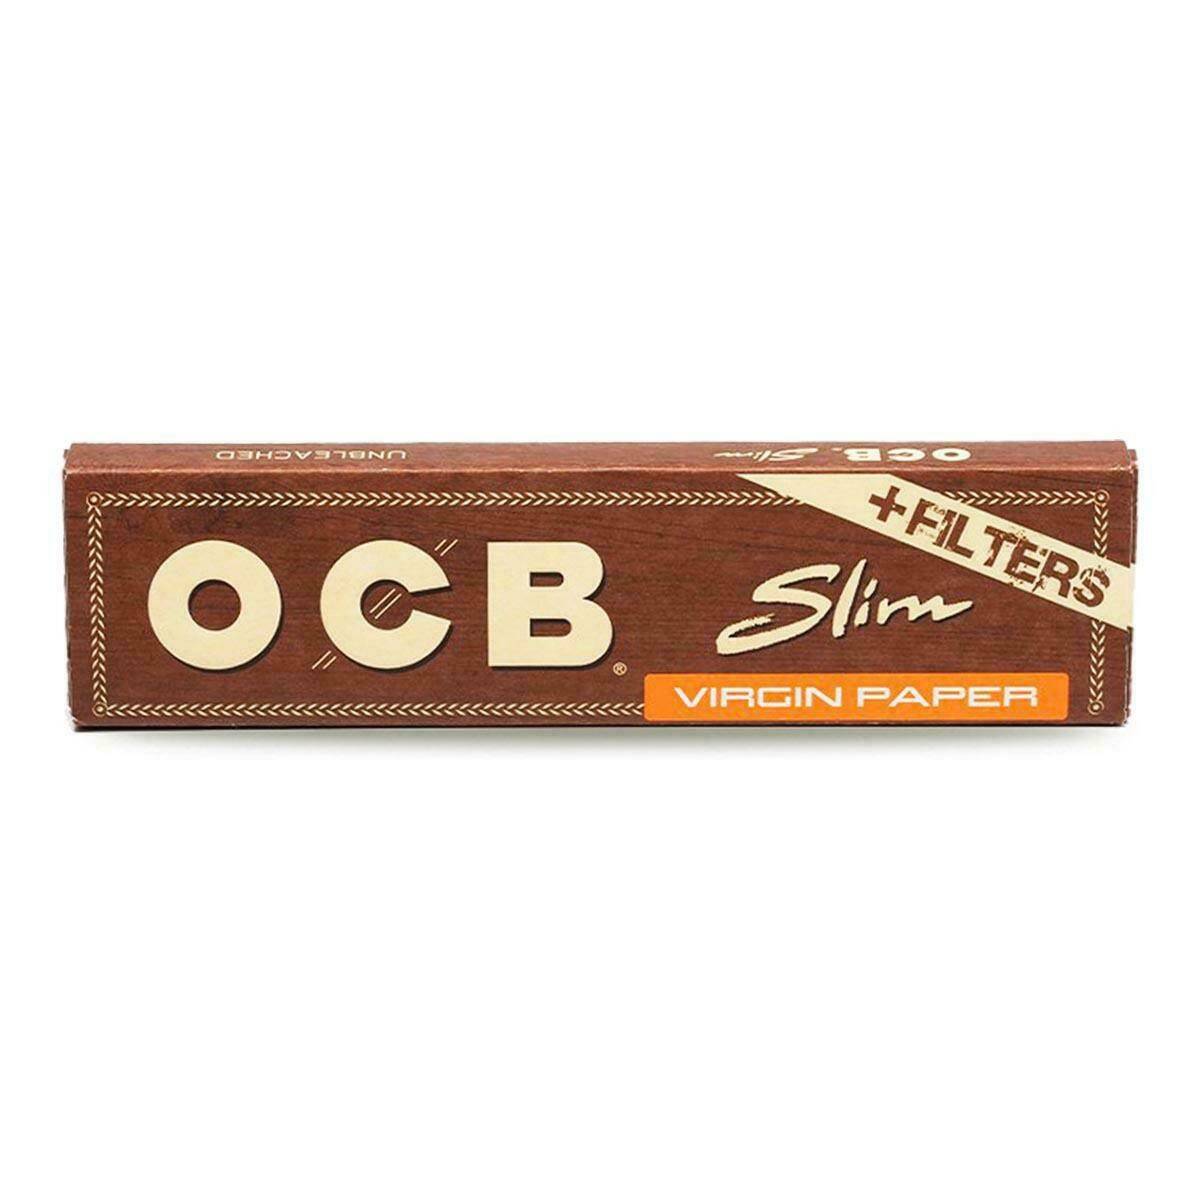 OCB Virgin Brown Slim + Filters (Photo 1)